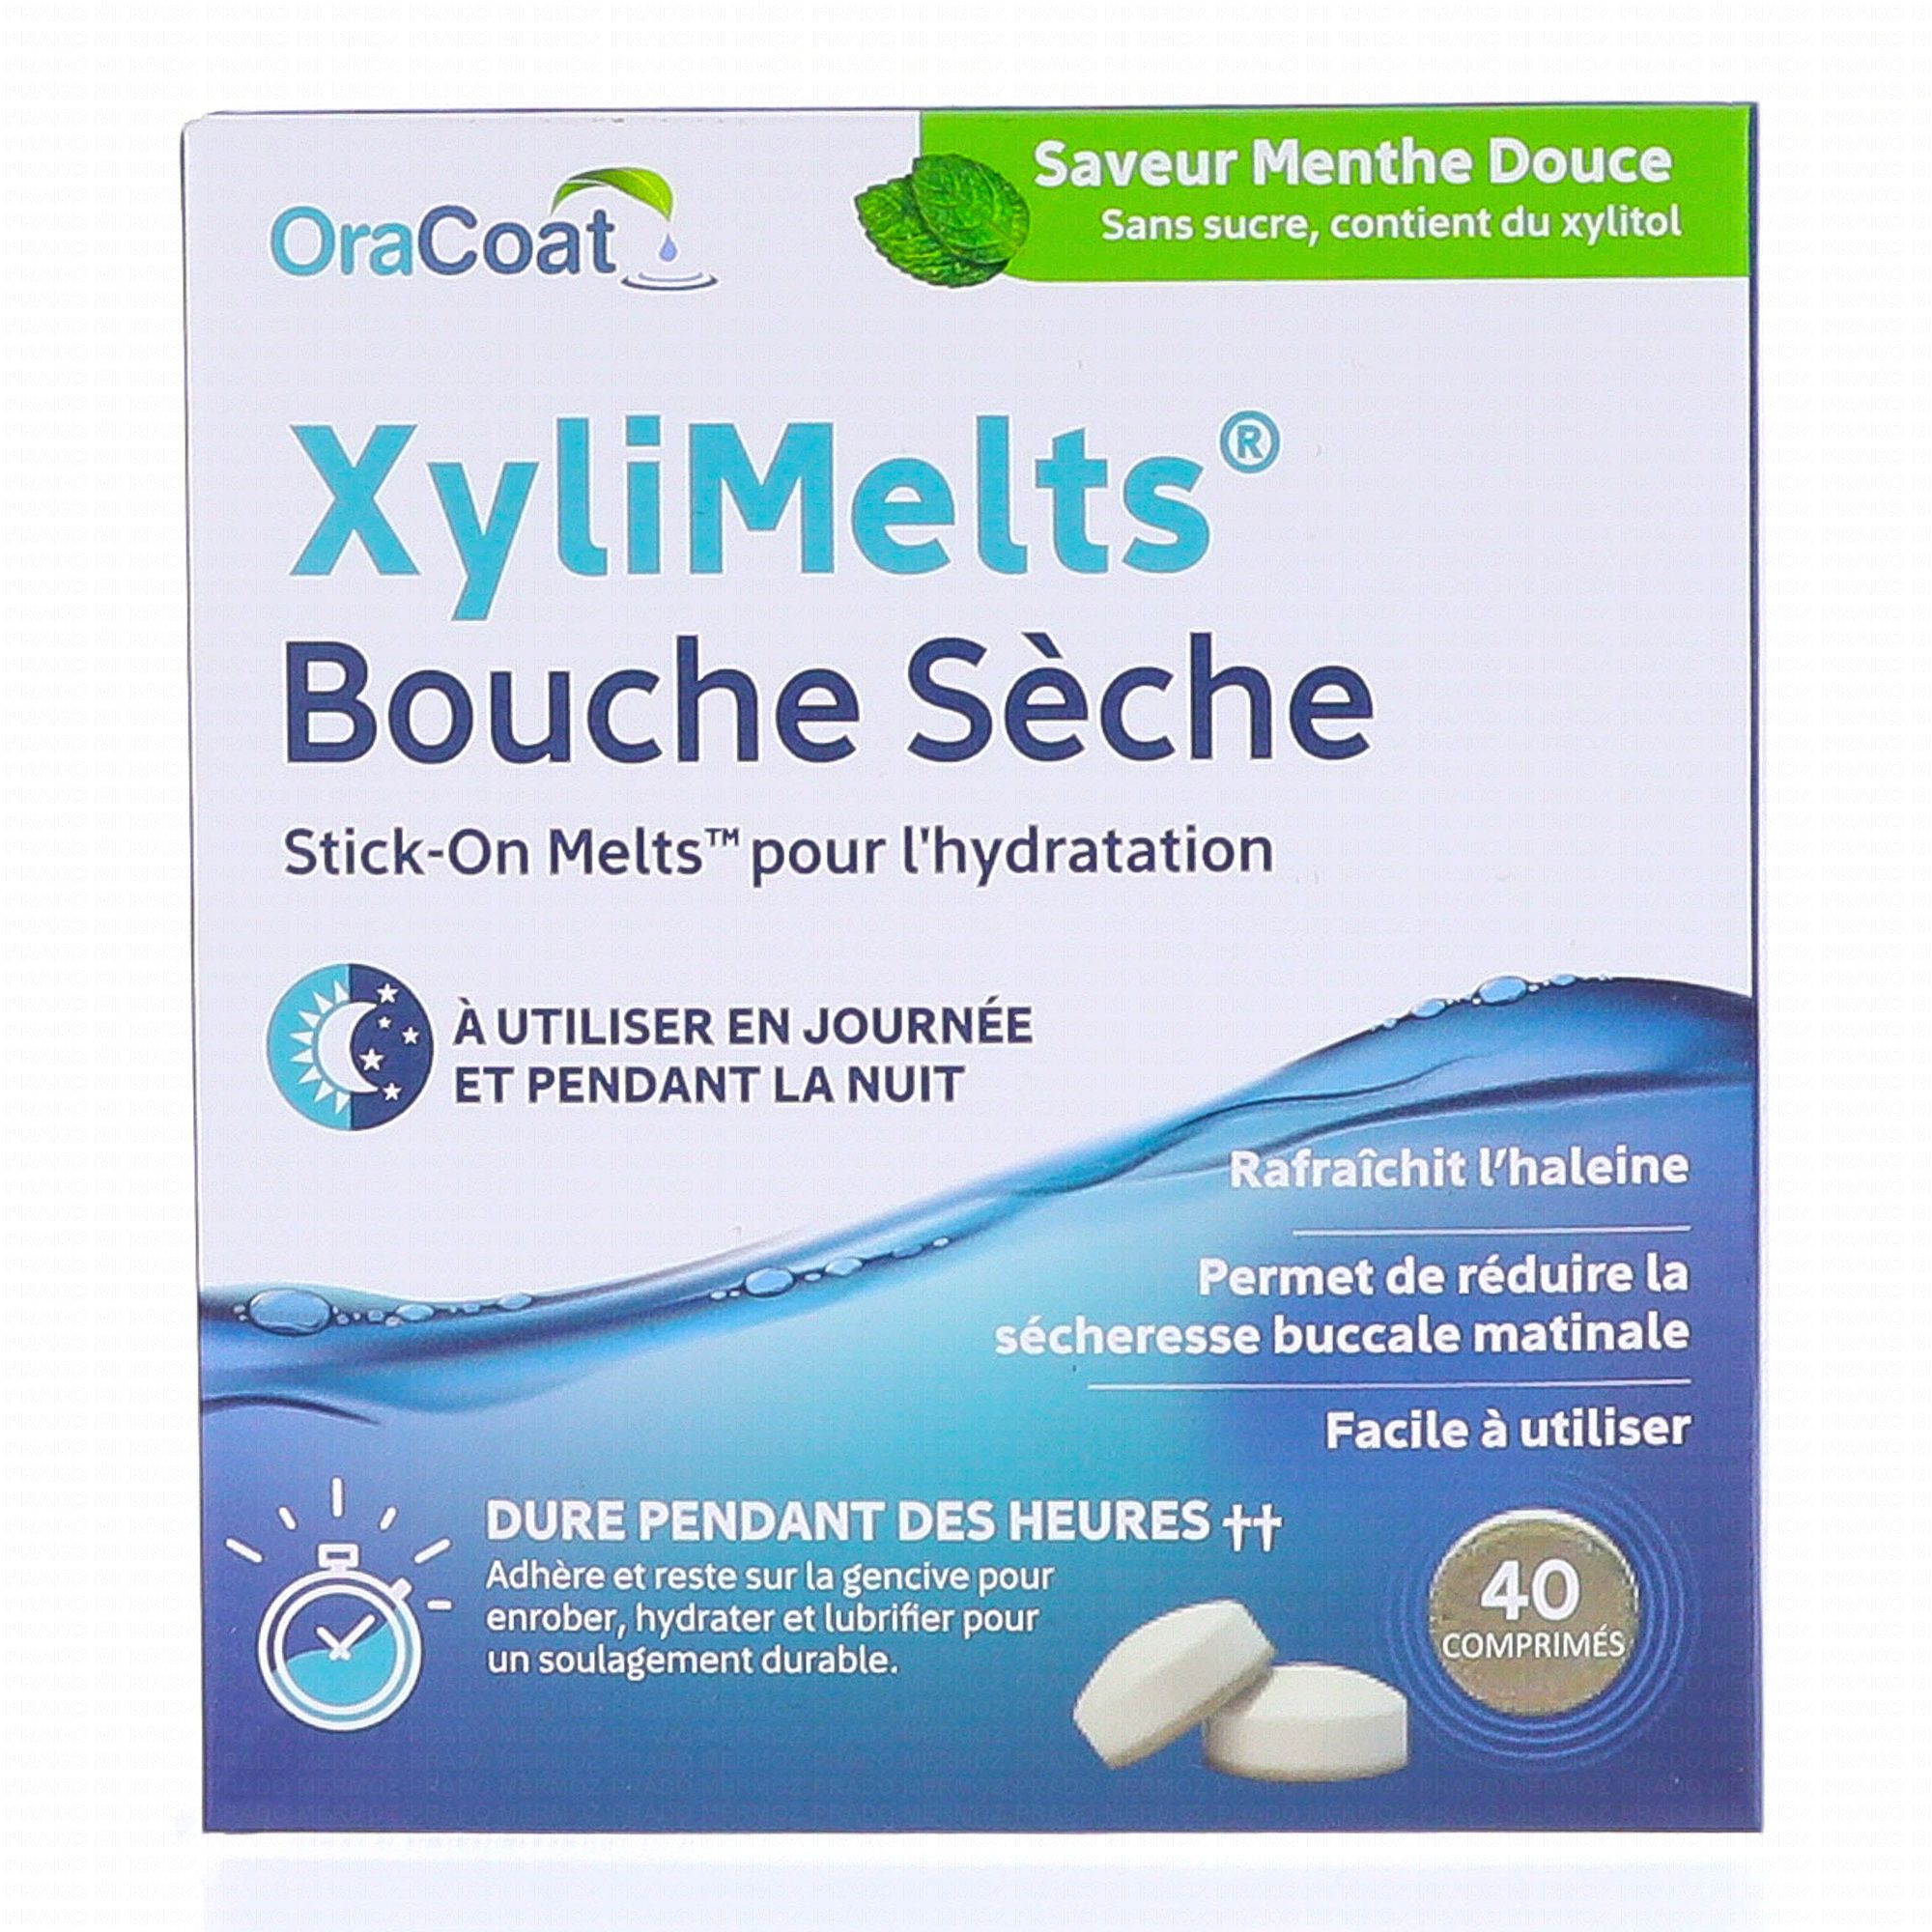 XYLIMENTS Bouche sèche menthe douce x40 comprimés - Parapharmacie ...